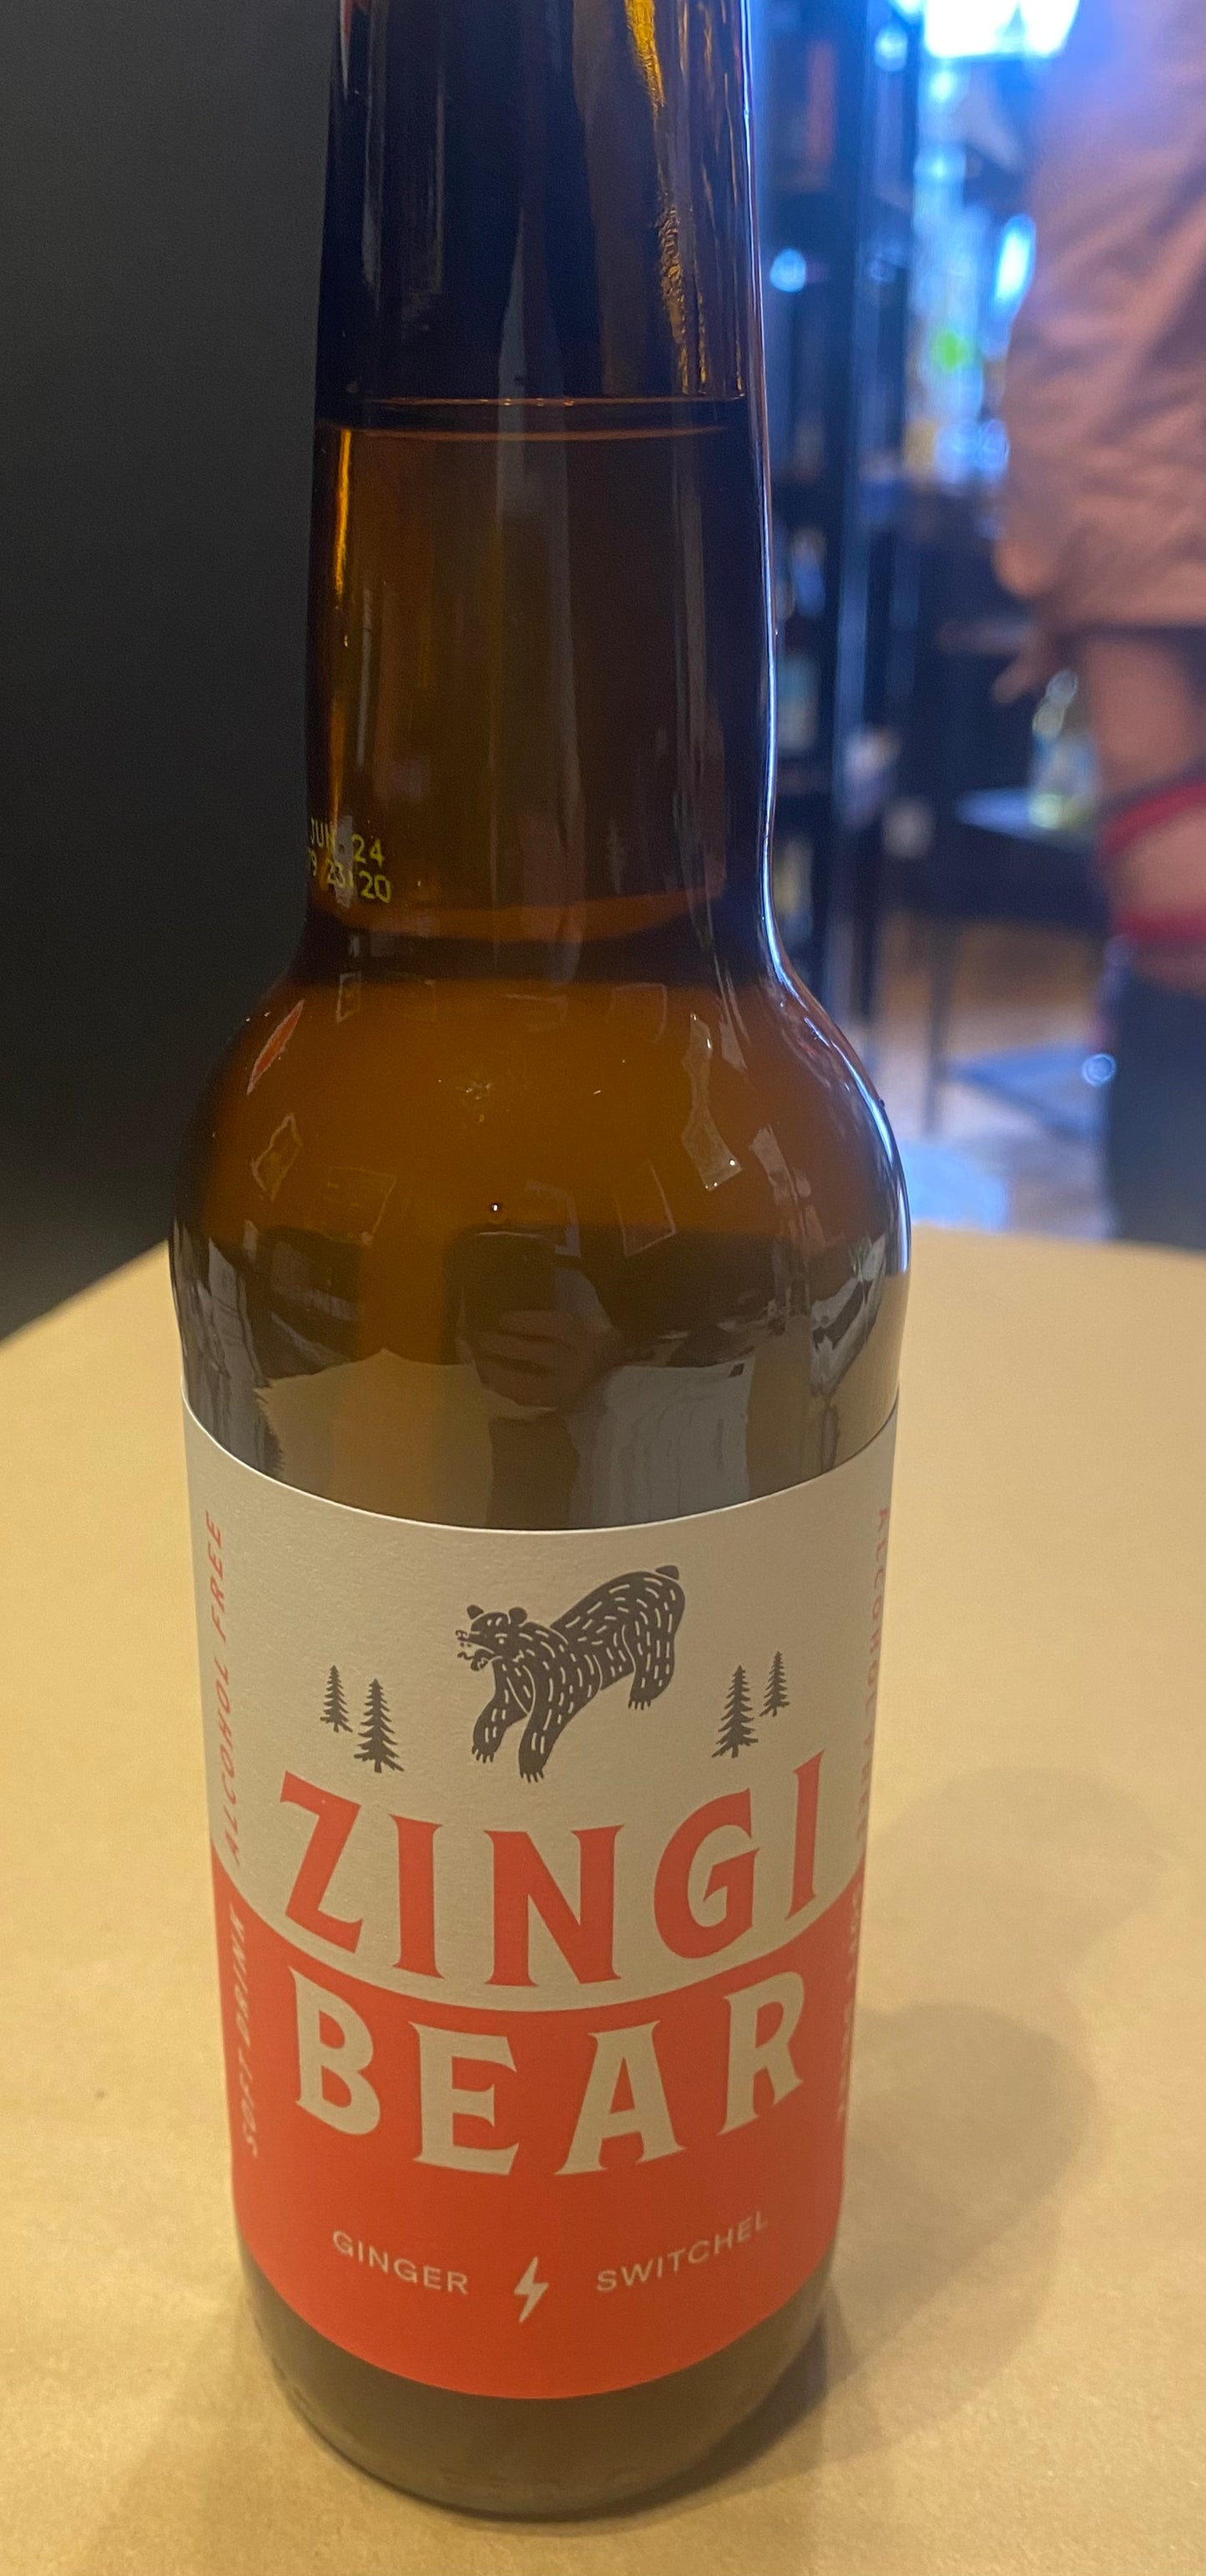 Zingi Bear Ginger Switchel